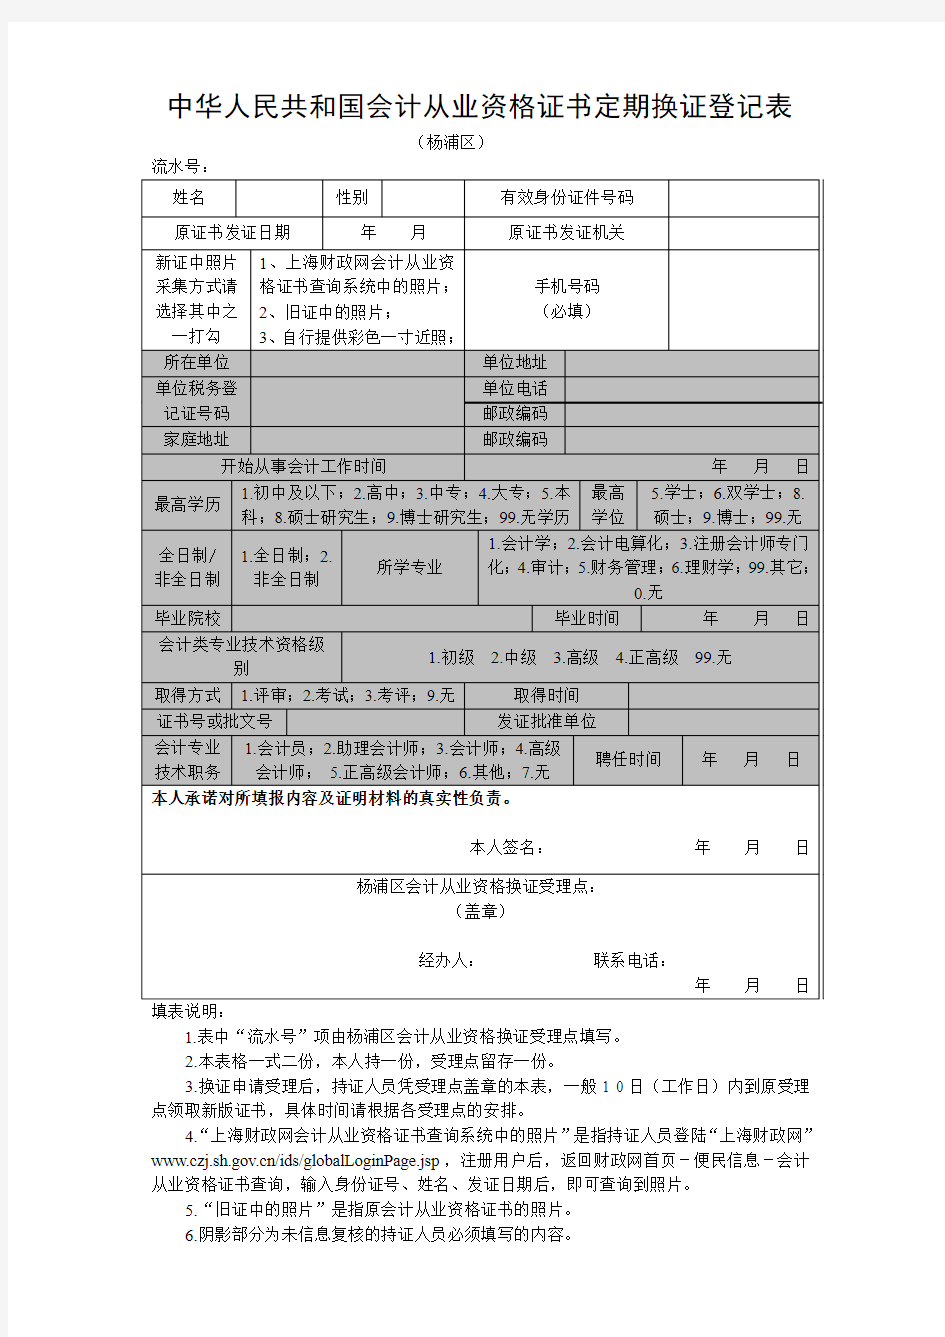 中华人民共和国会计从业资格证书定期换证登记表